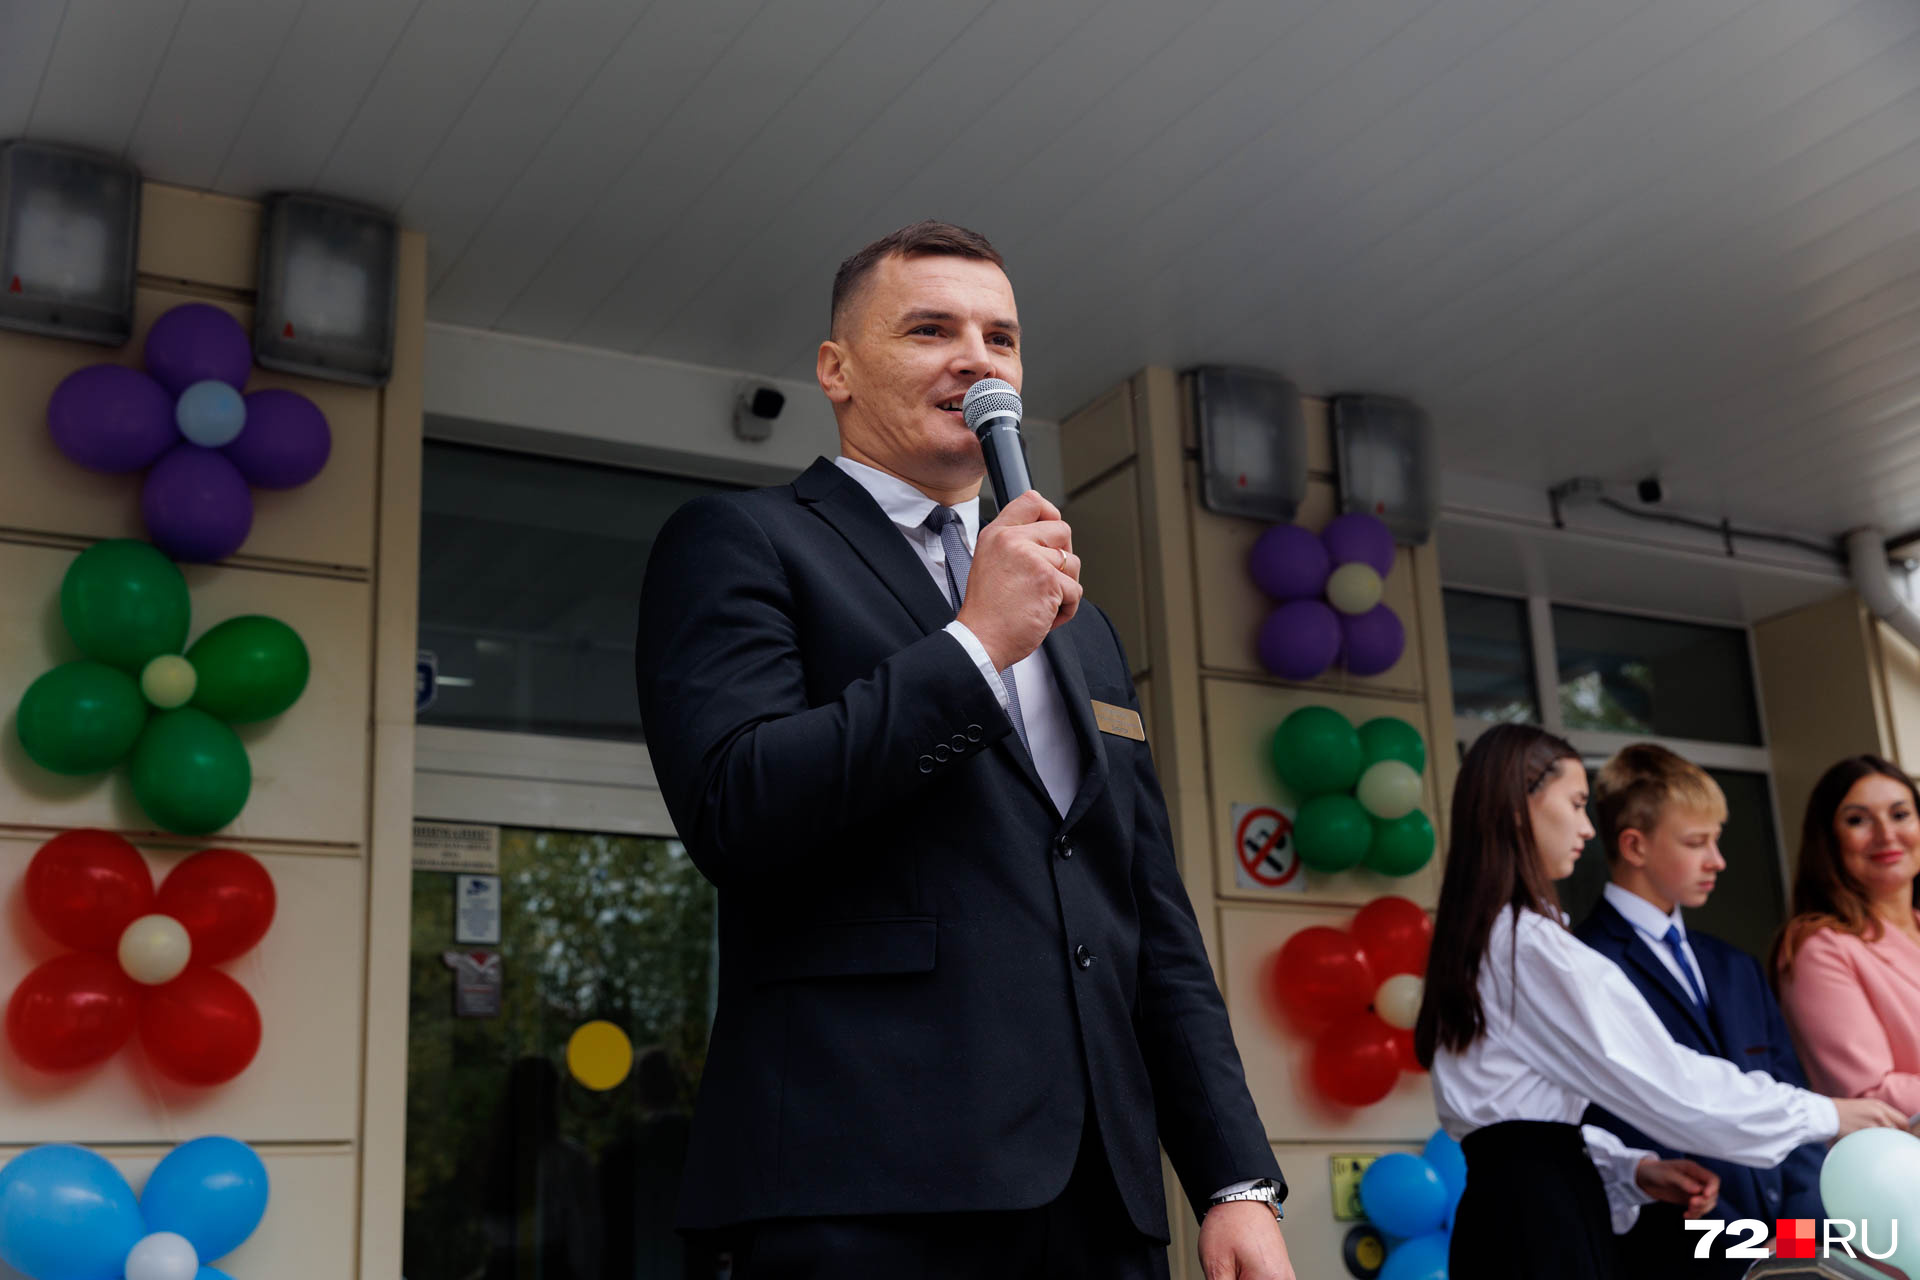 А это новый директор школы — Евгений Кальченко. Такую должность он занимает впервые